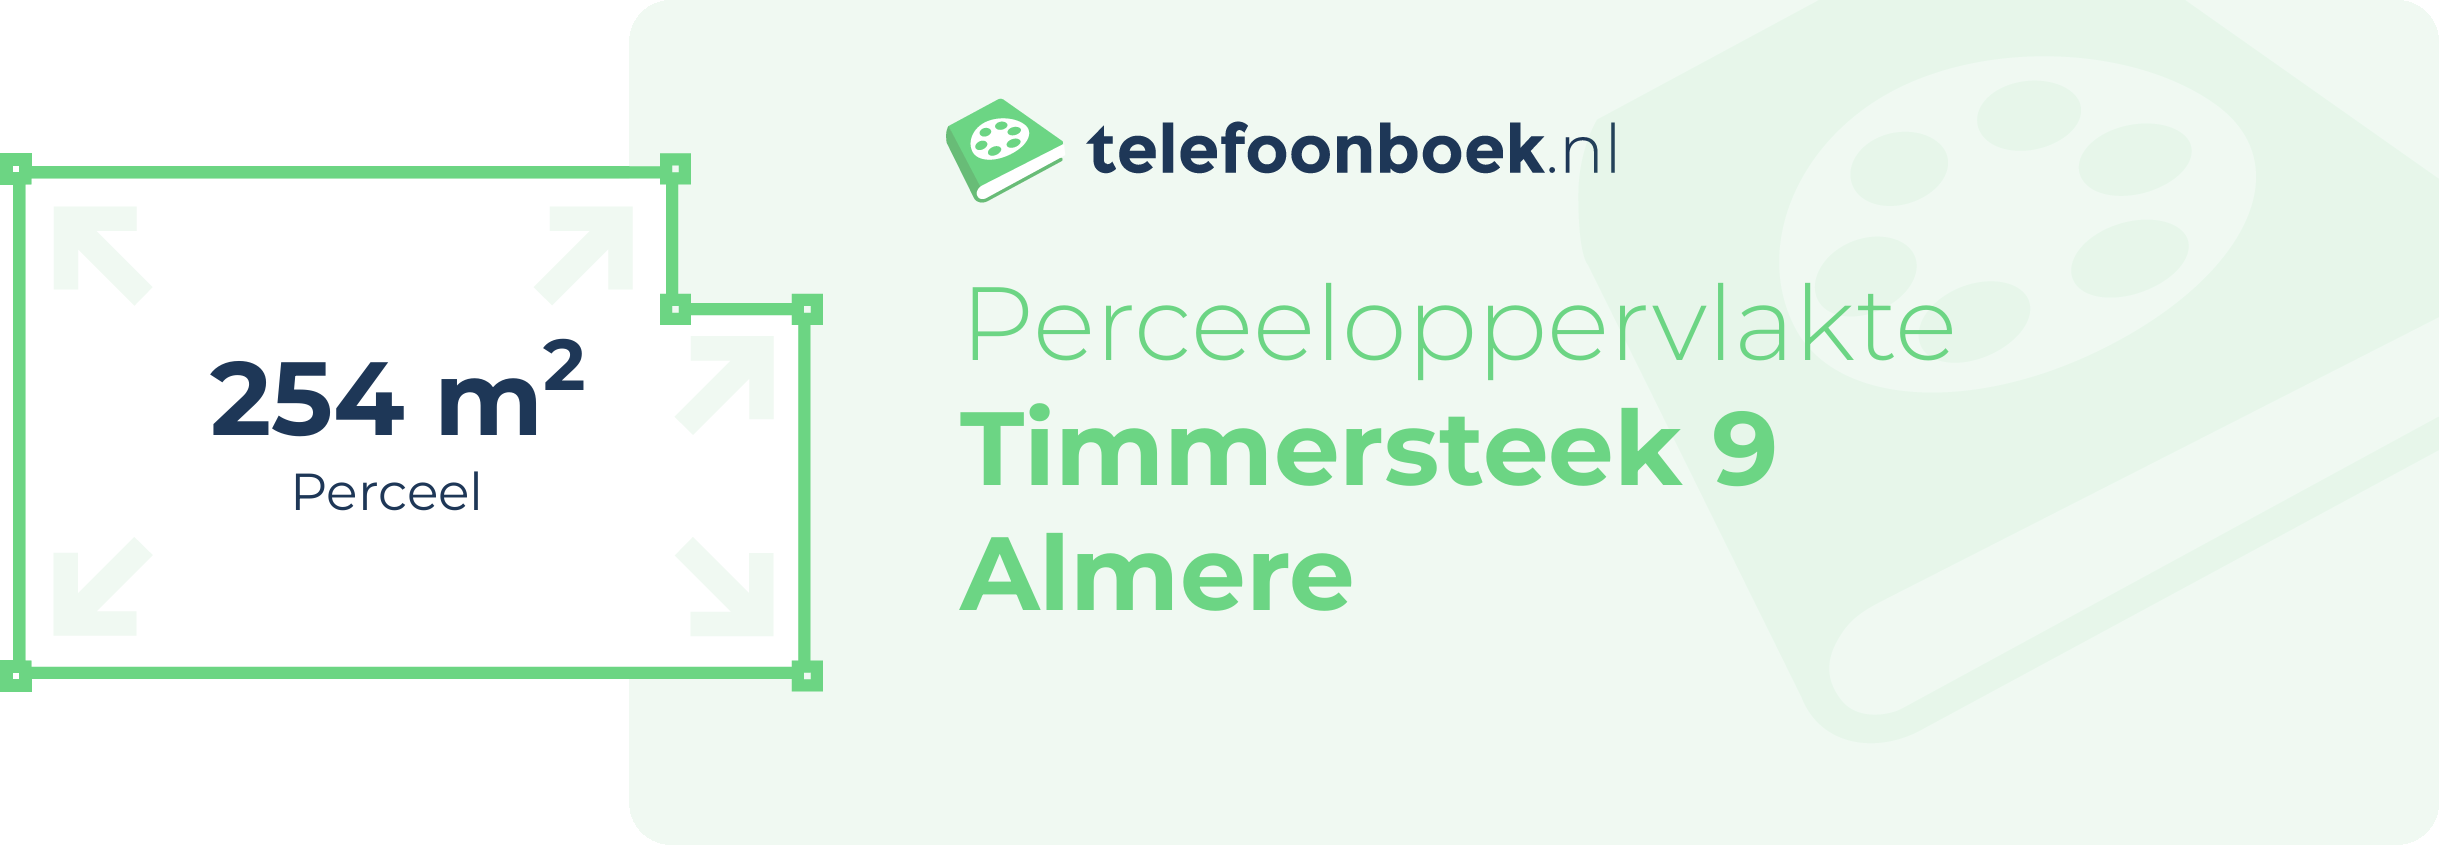 Perceeloppervlakte Timmersteek 9 Almere